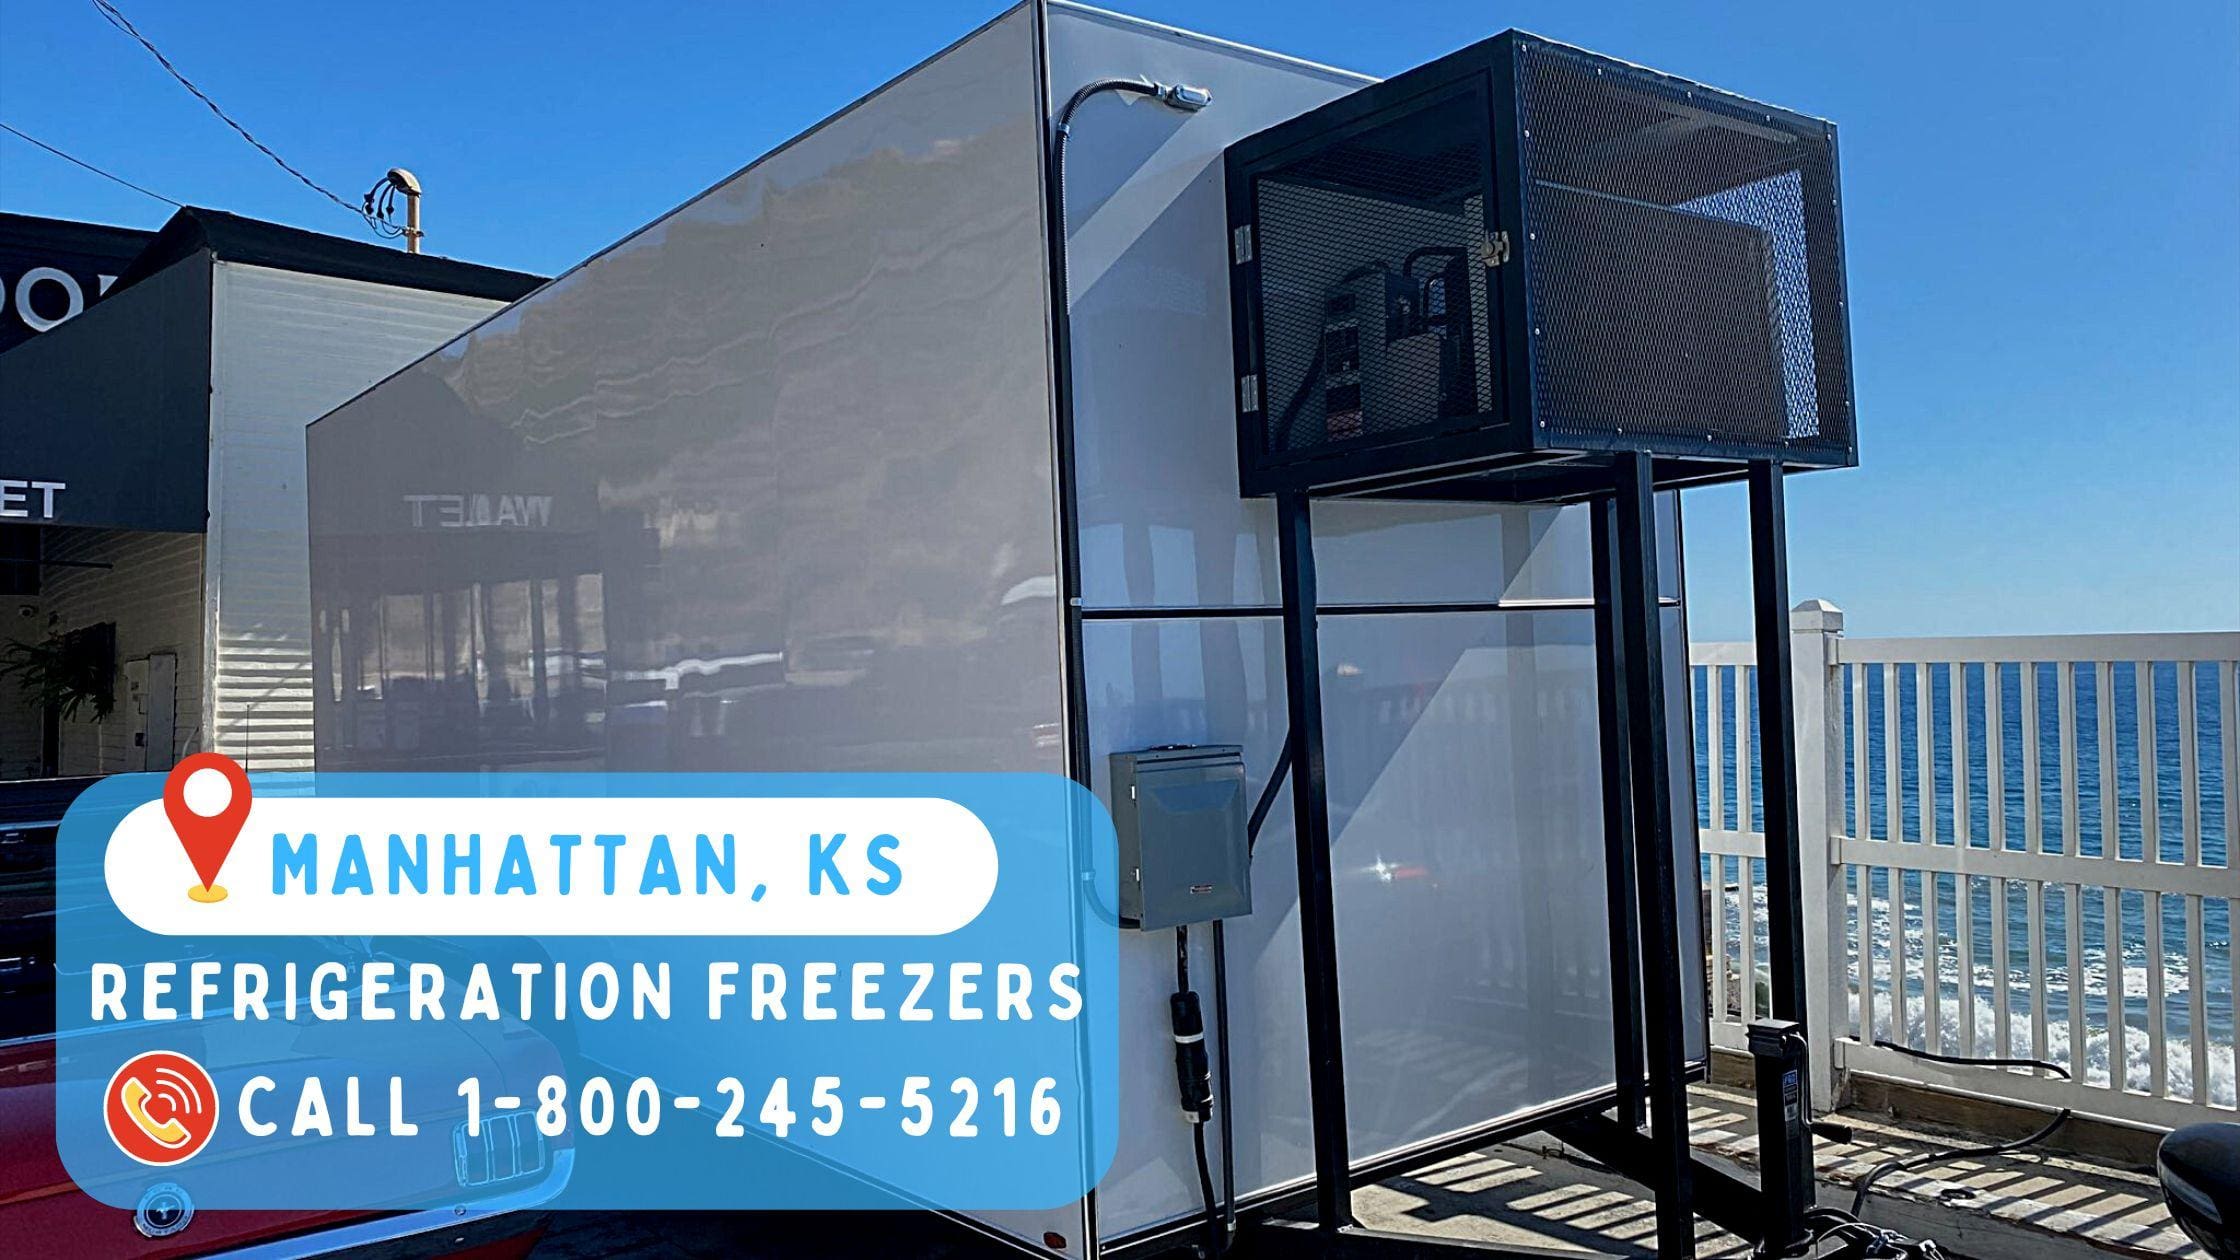 Refrigeration Freezers in Manhattan, KS